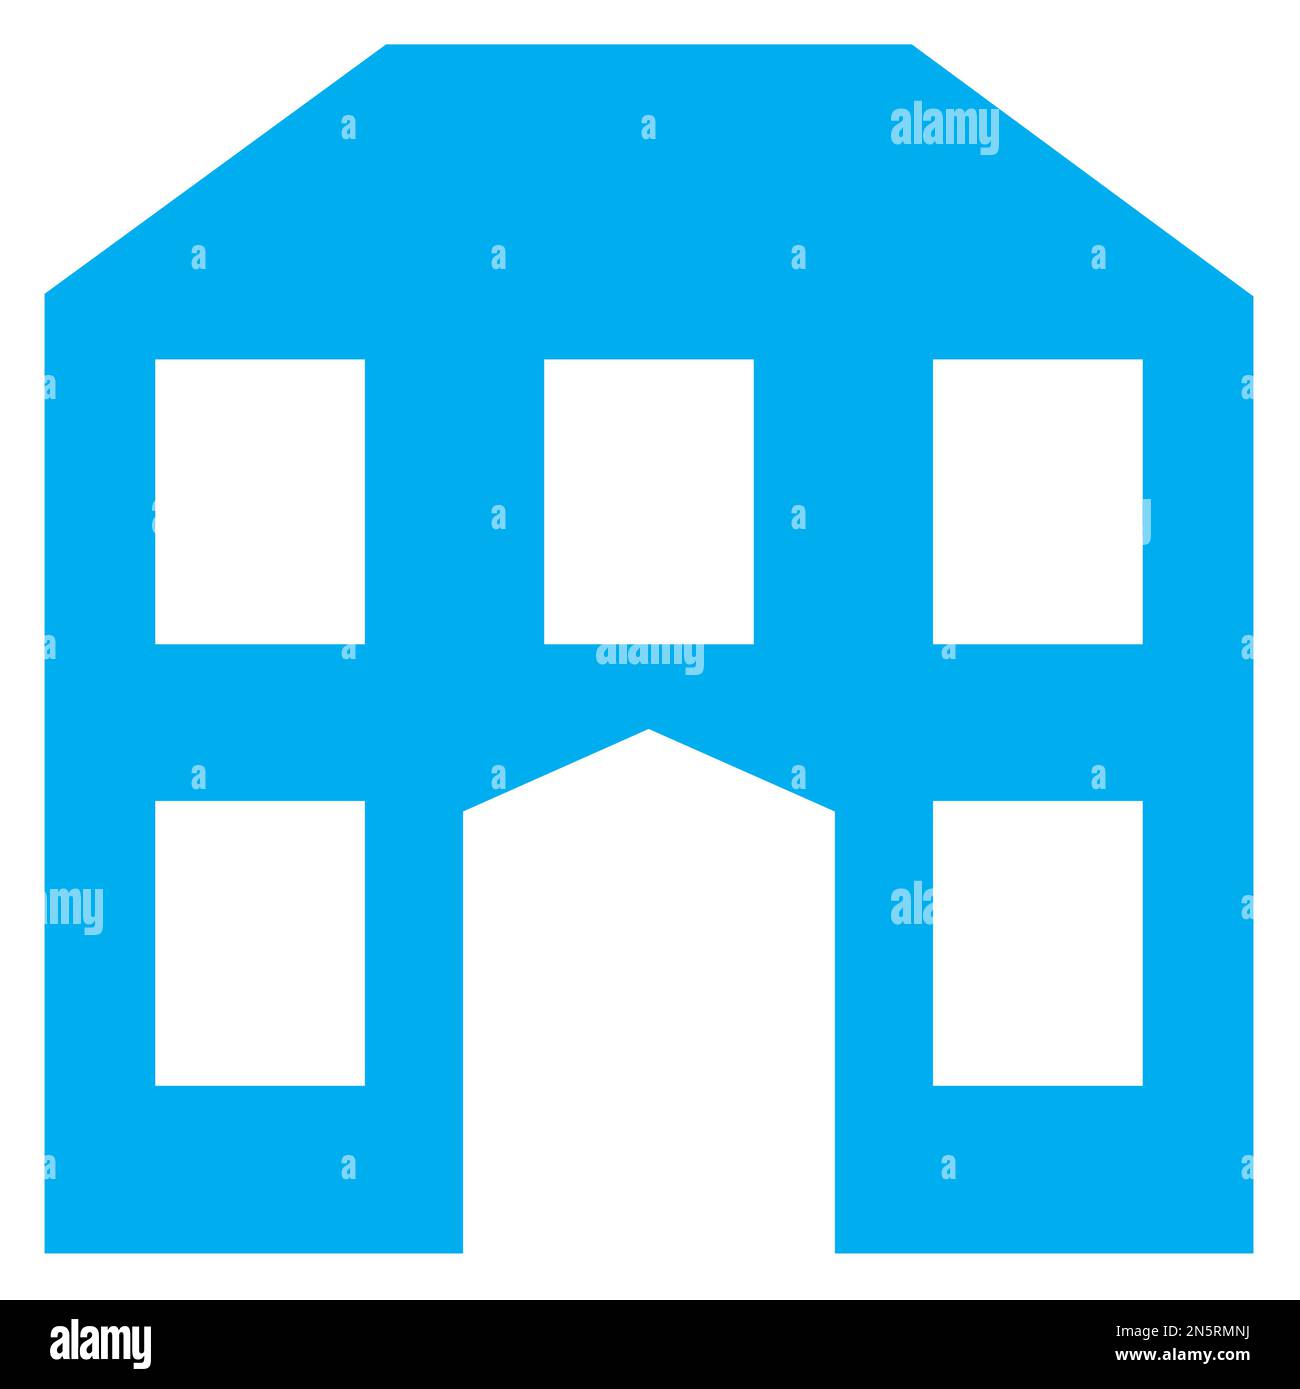 Grafica vettoriale blu e bianco di una mappa simbolo di una casa storica. Si compone di una silhouette blu di un vecchio edificio stilizzato su uno sfondo bianco Illustrazione Vettoriale